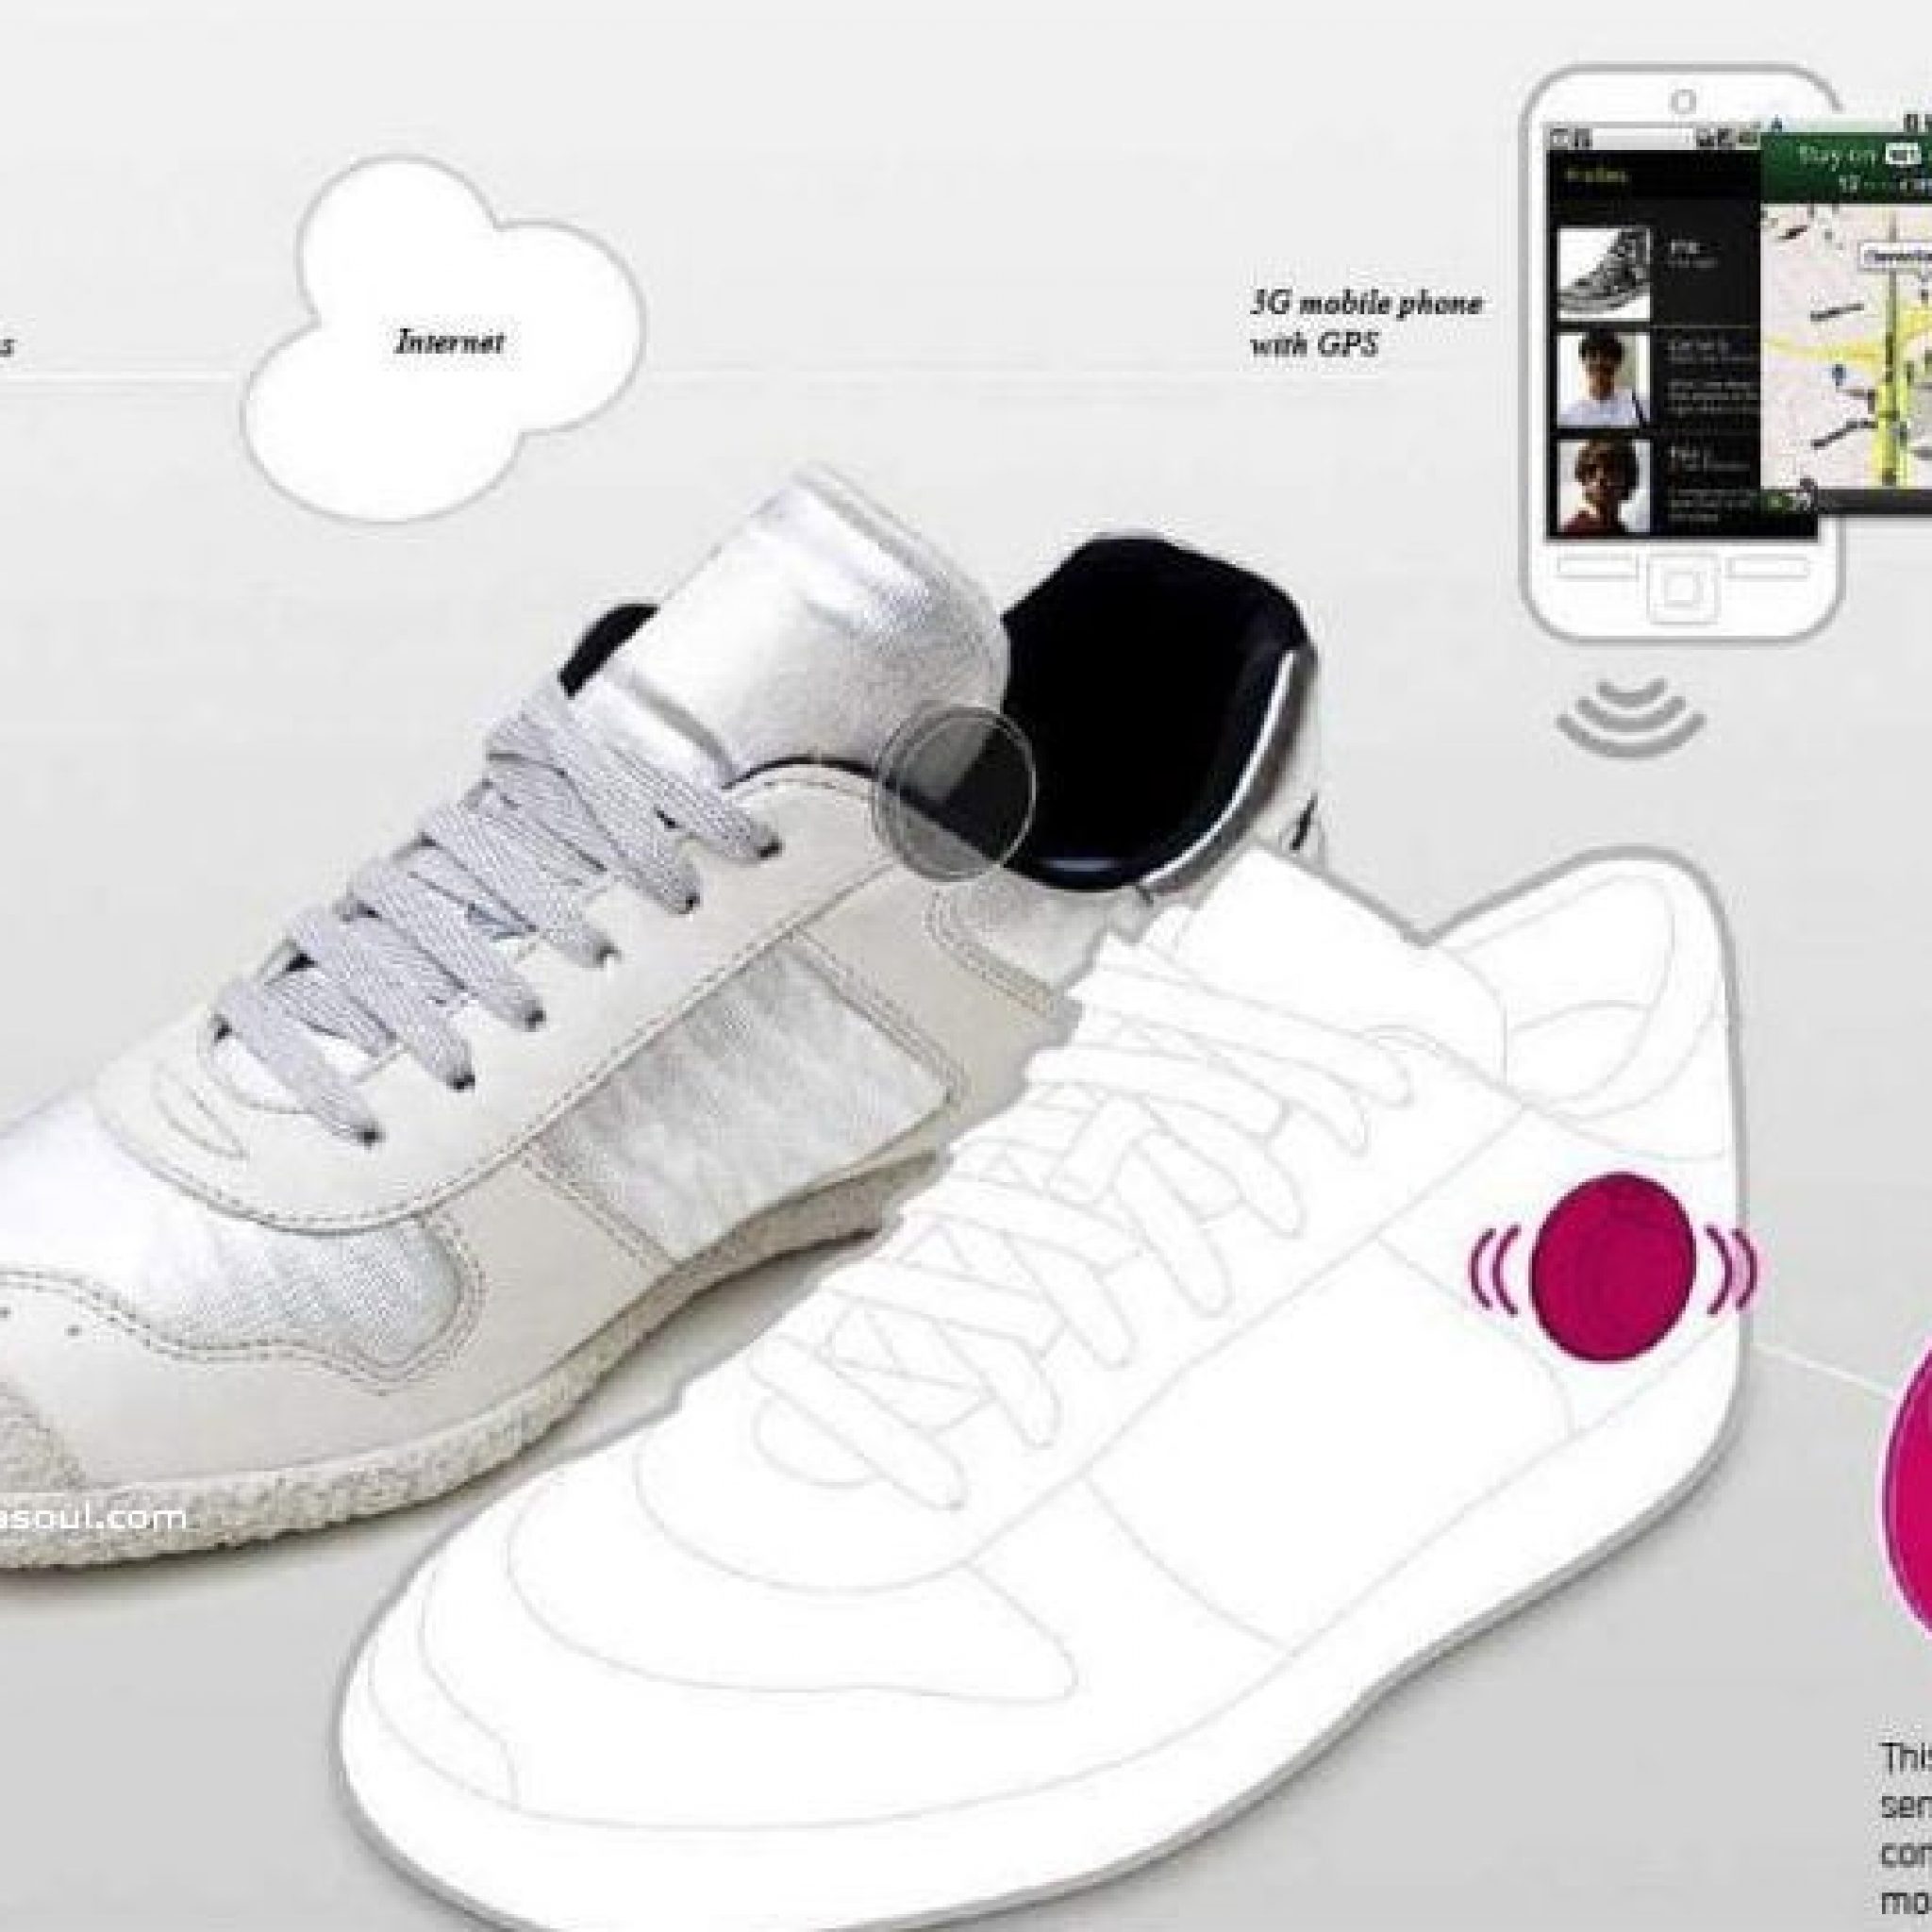 Zapatos Con Gps Y Bolsos Que Recargan Móviles Mediante Energía Solar